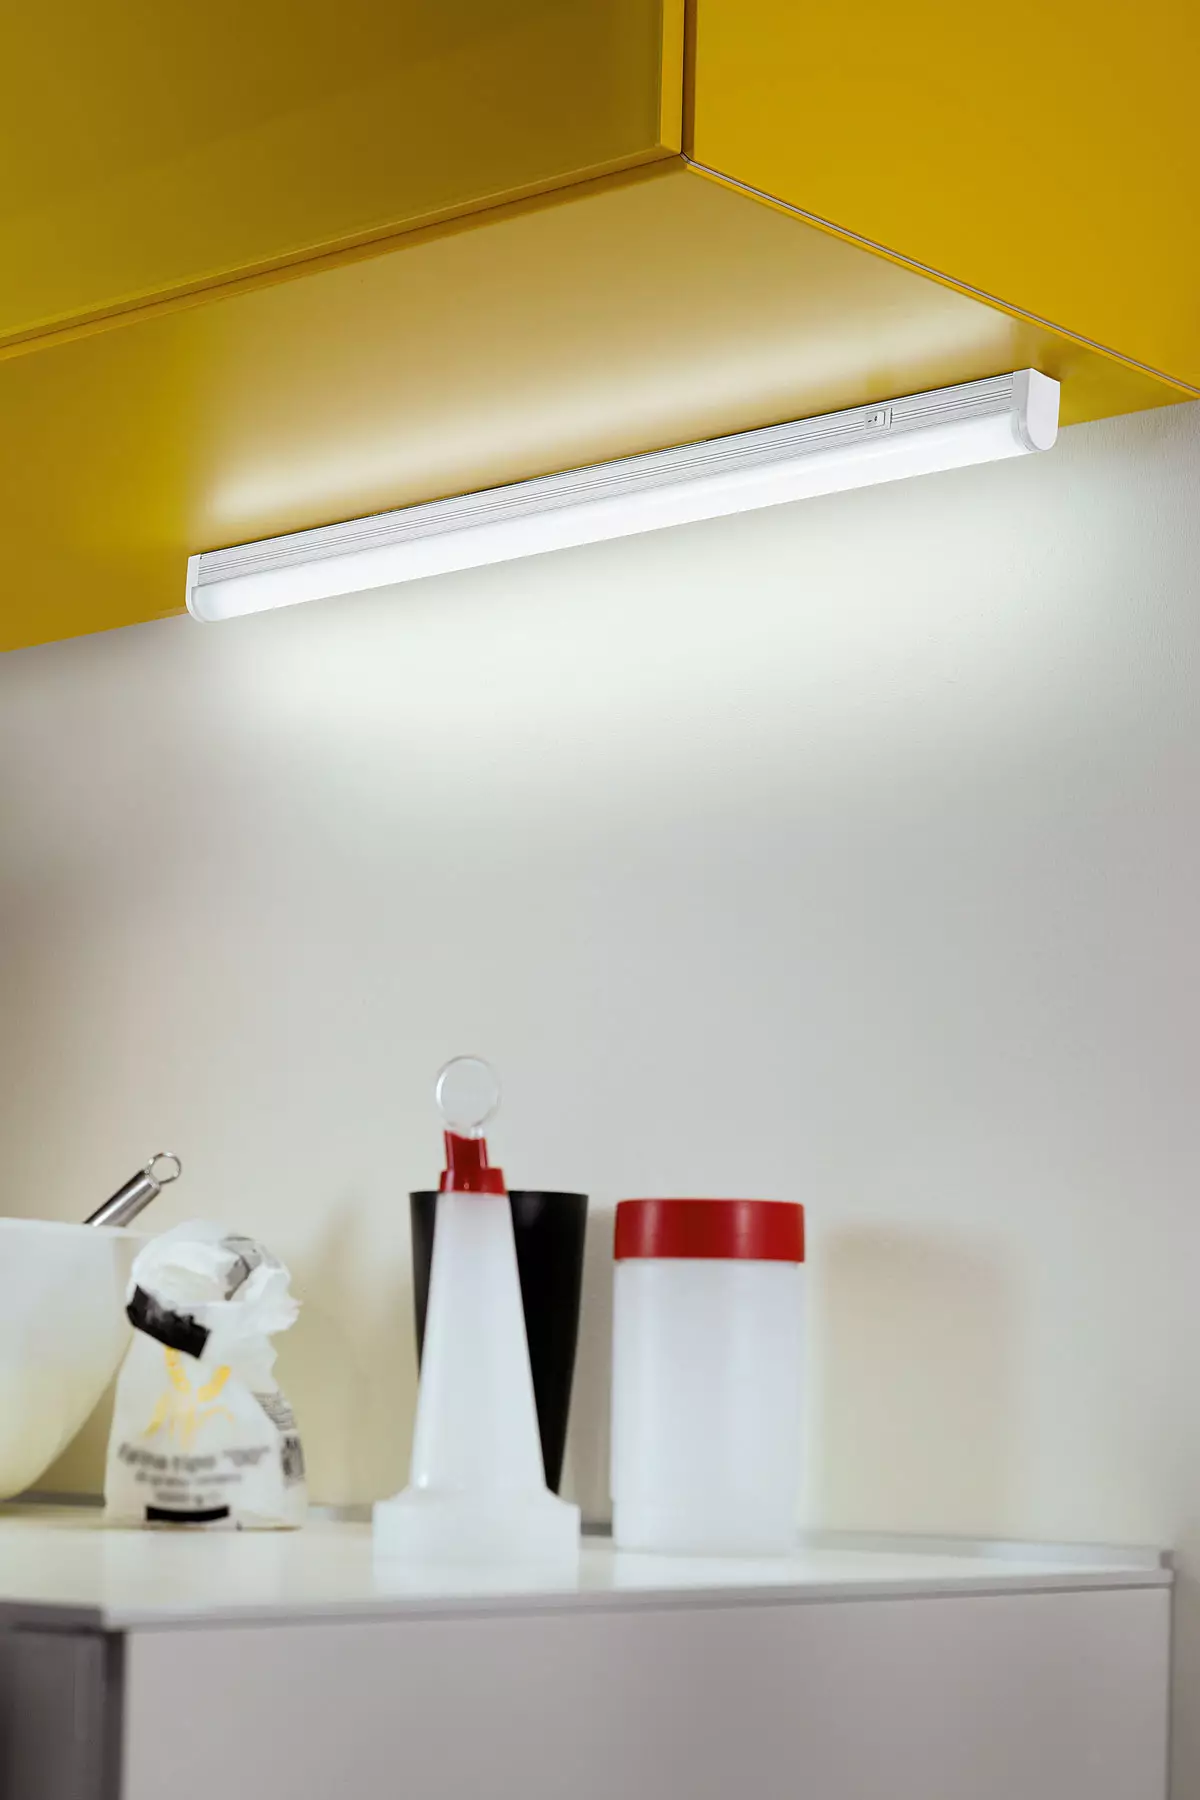 Đèn nền LED dưới tủ bếp (80 ảnh): Tổng quan về các đèn trên cao, kèm theo và các đèn bếp khác có đèn LED. Đèn nào tốt hơn? 21002_35